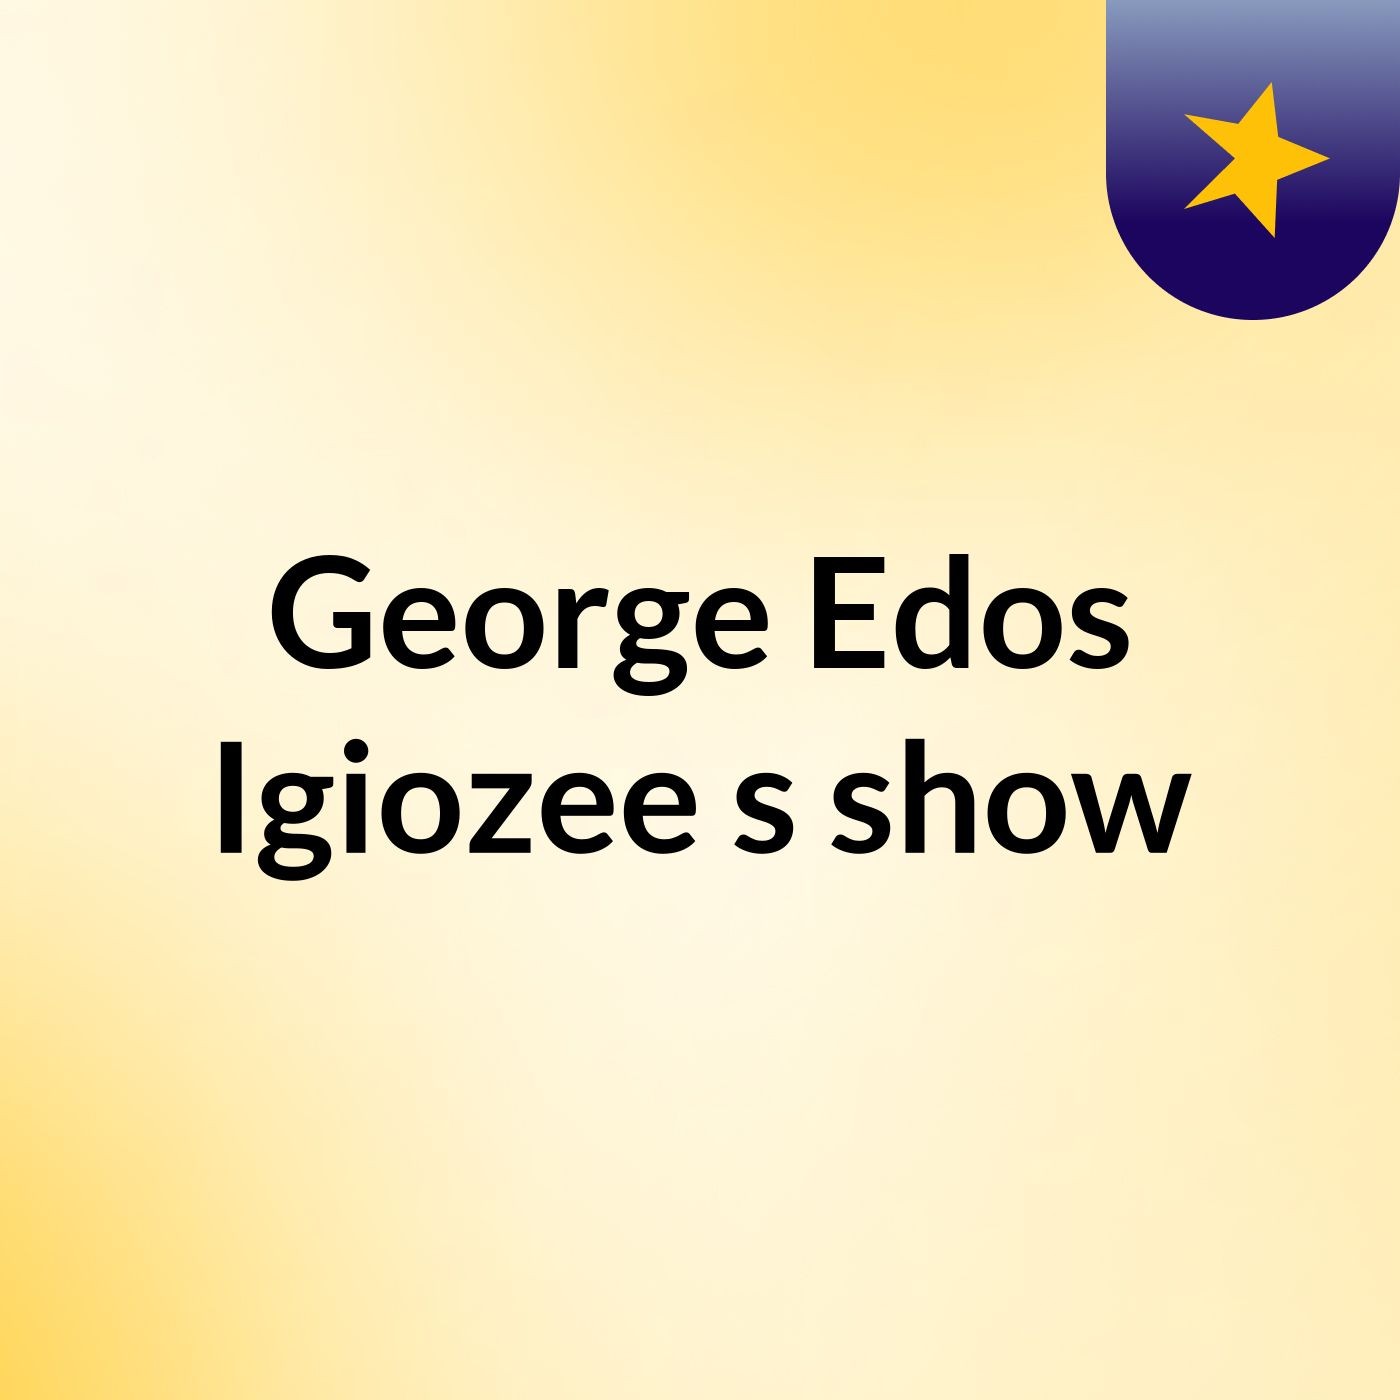 George Edos Igiozee's show